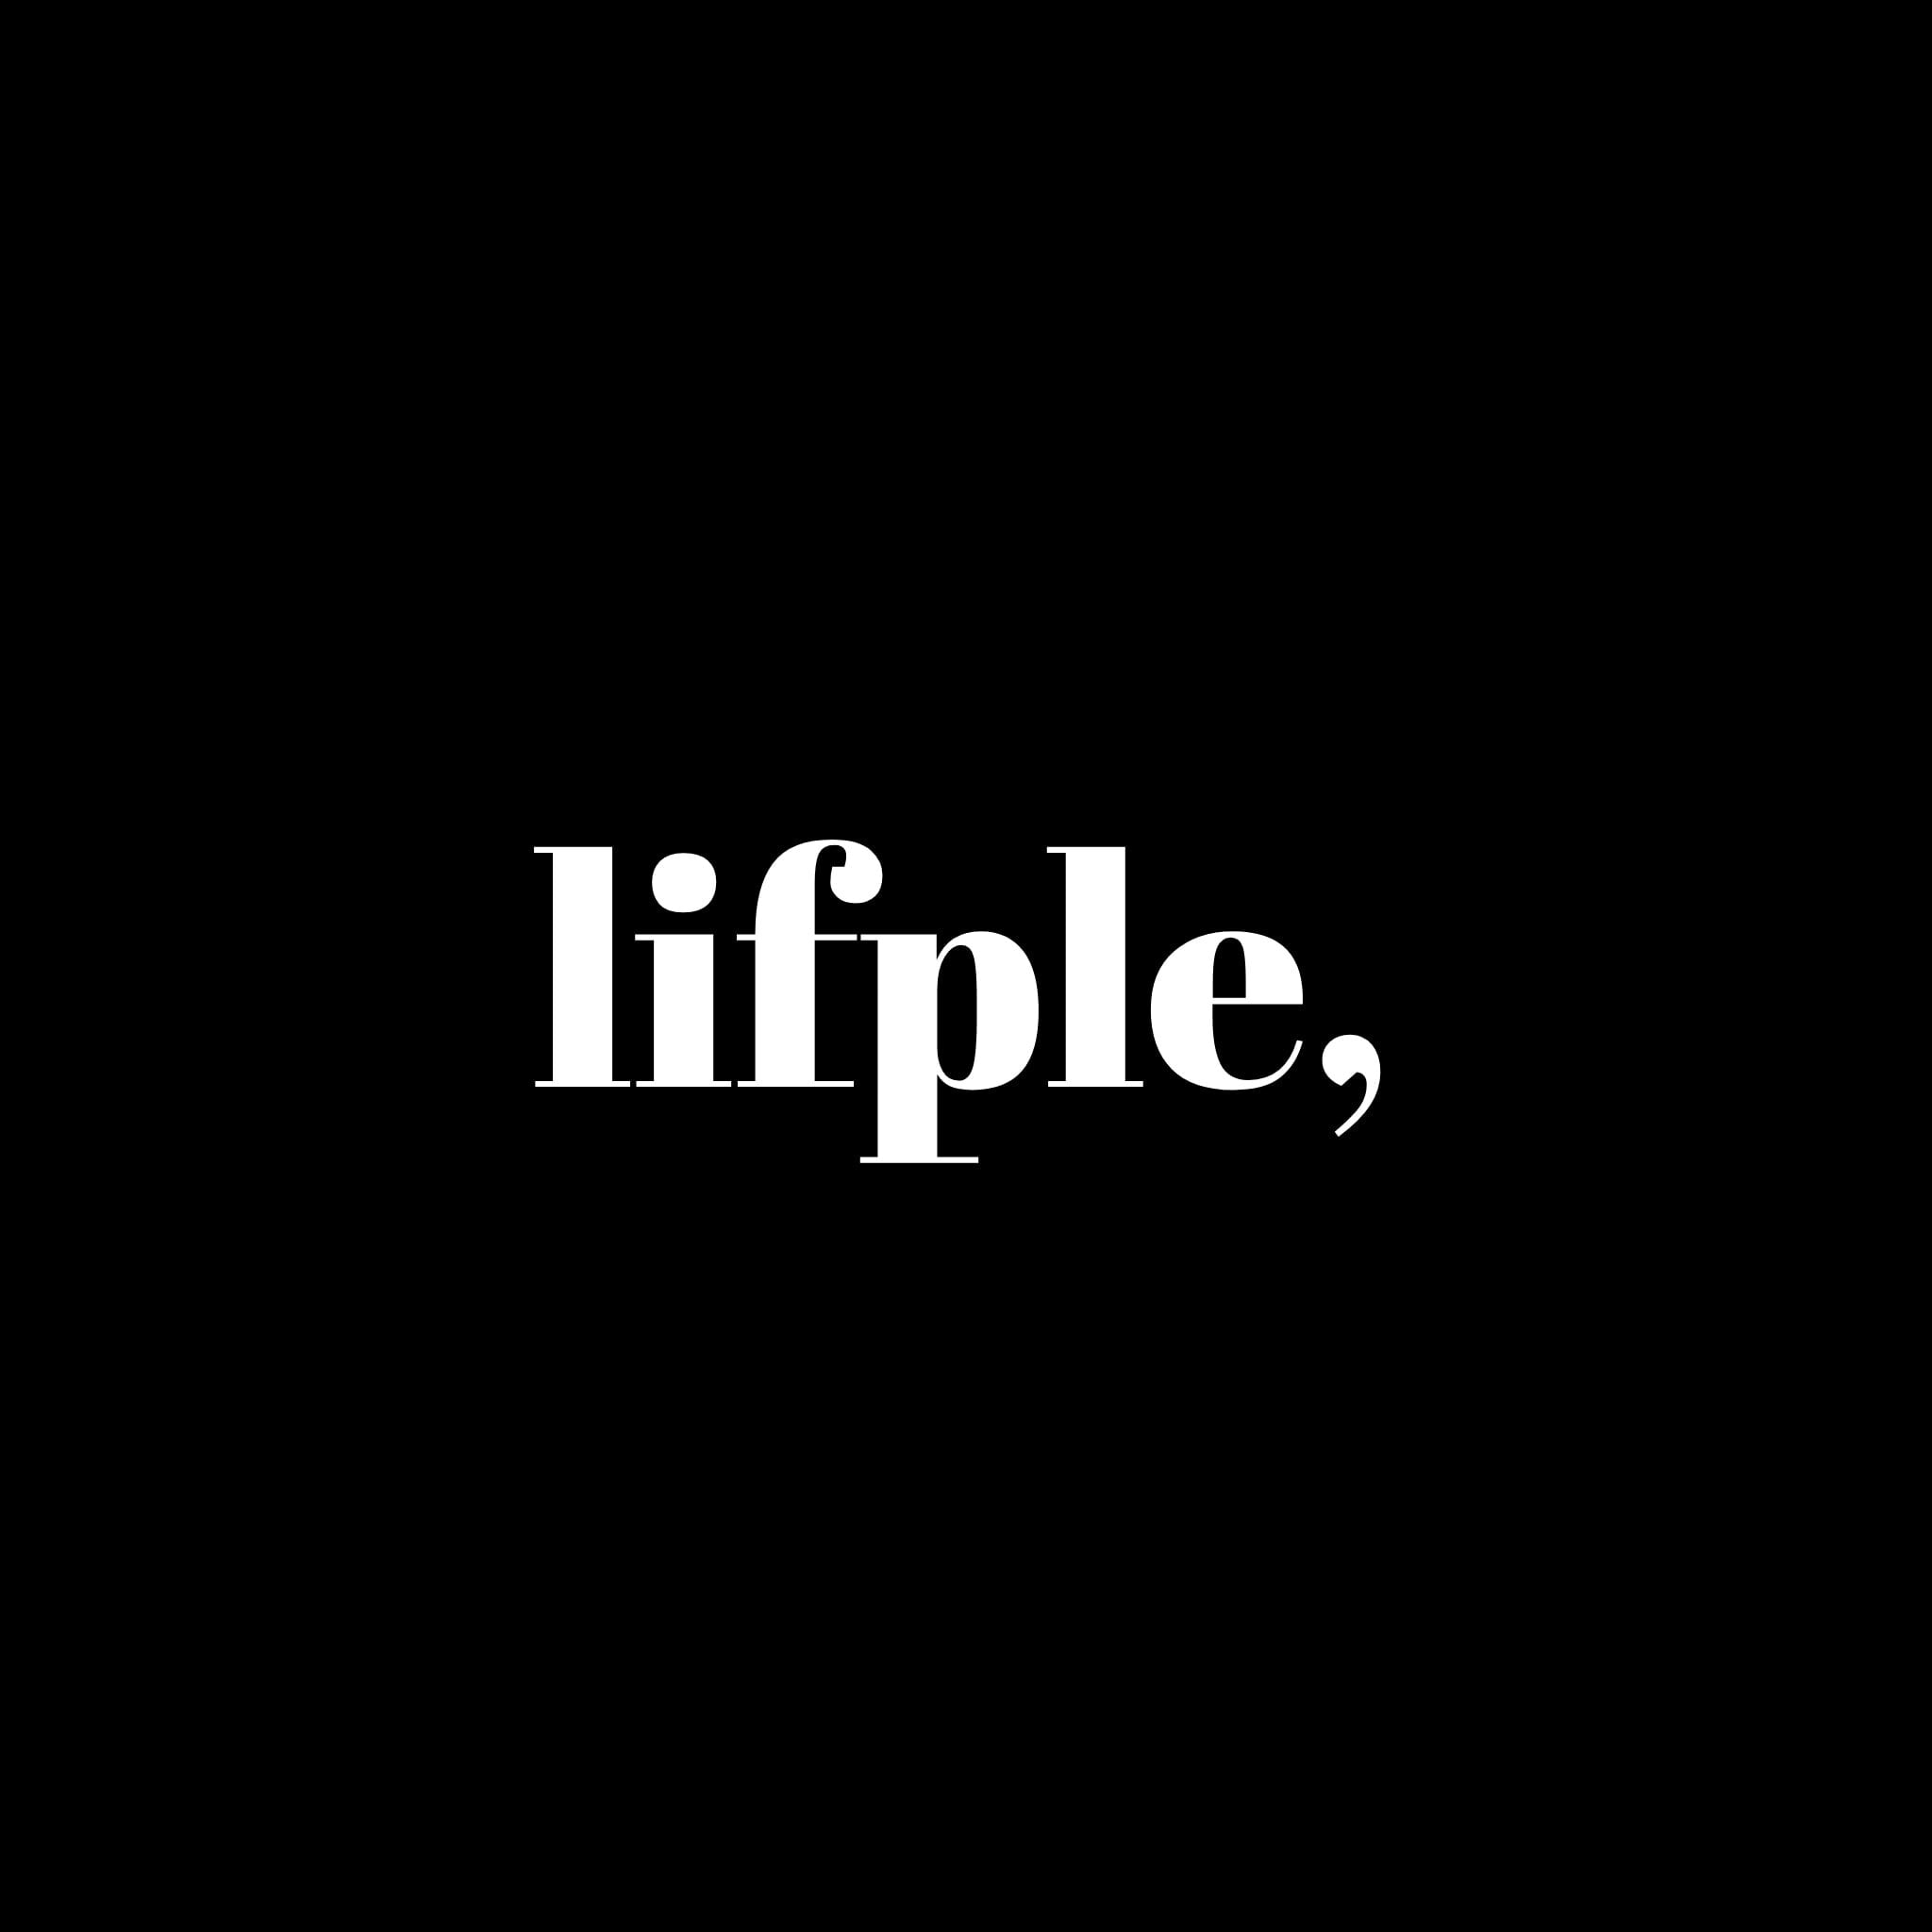 lifple,